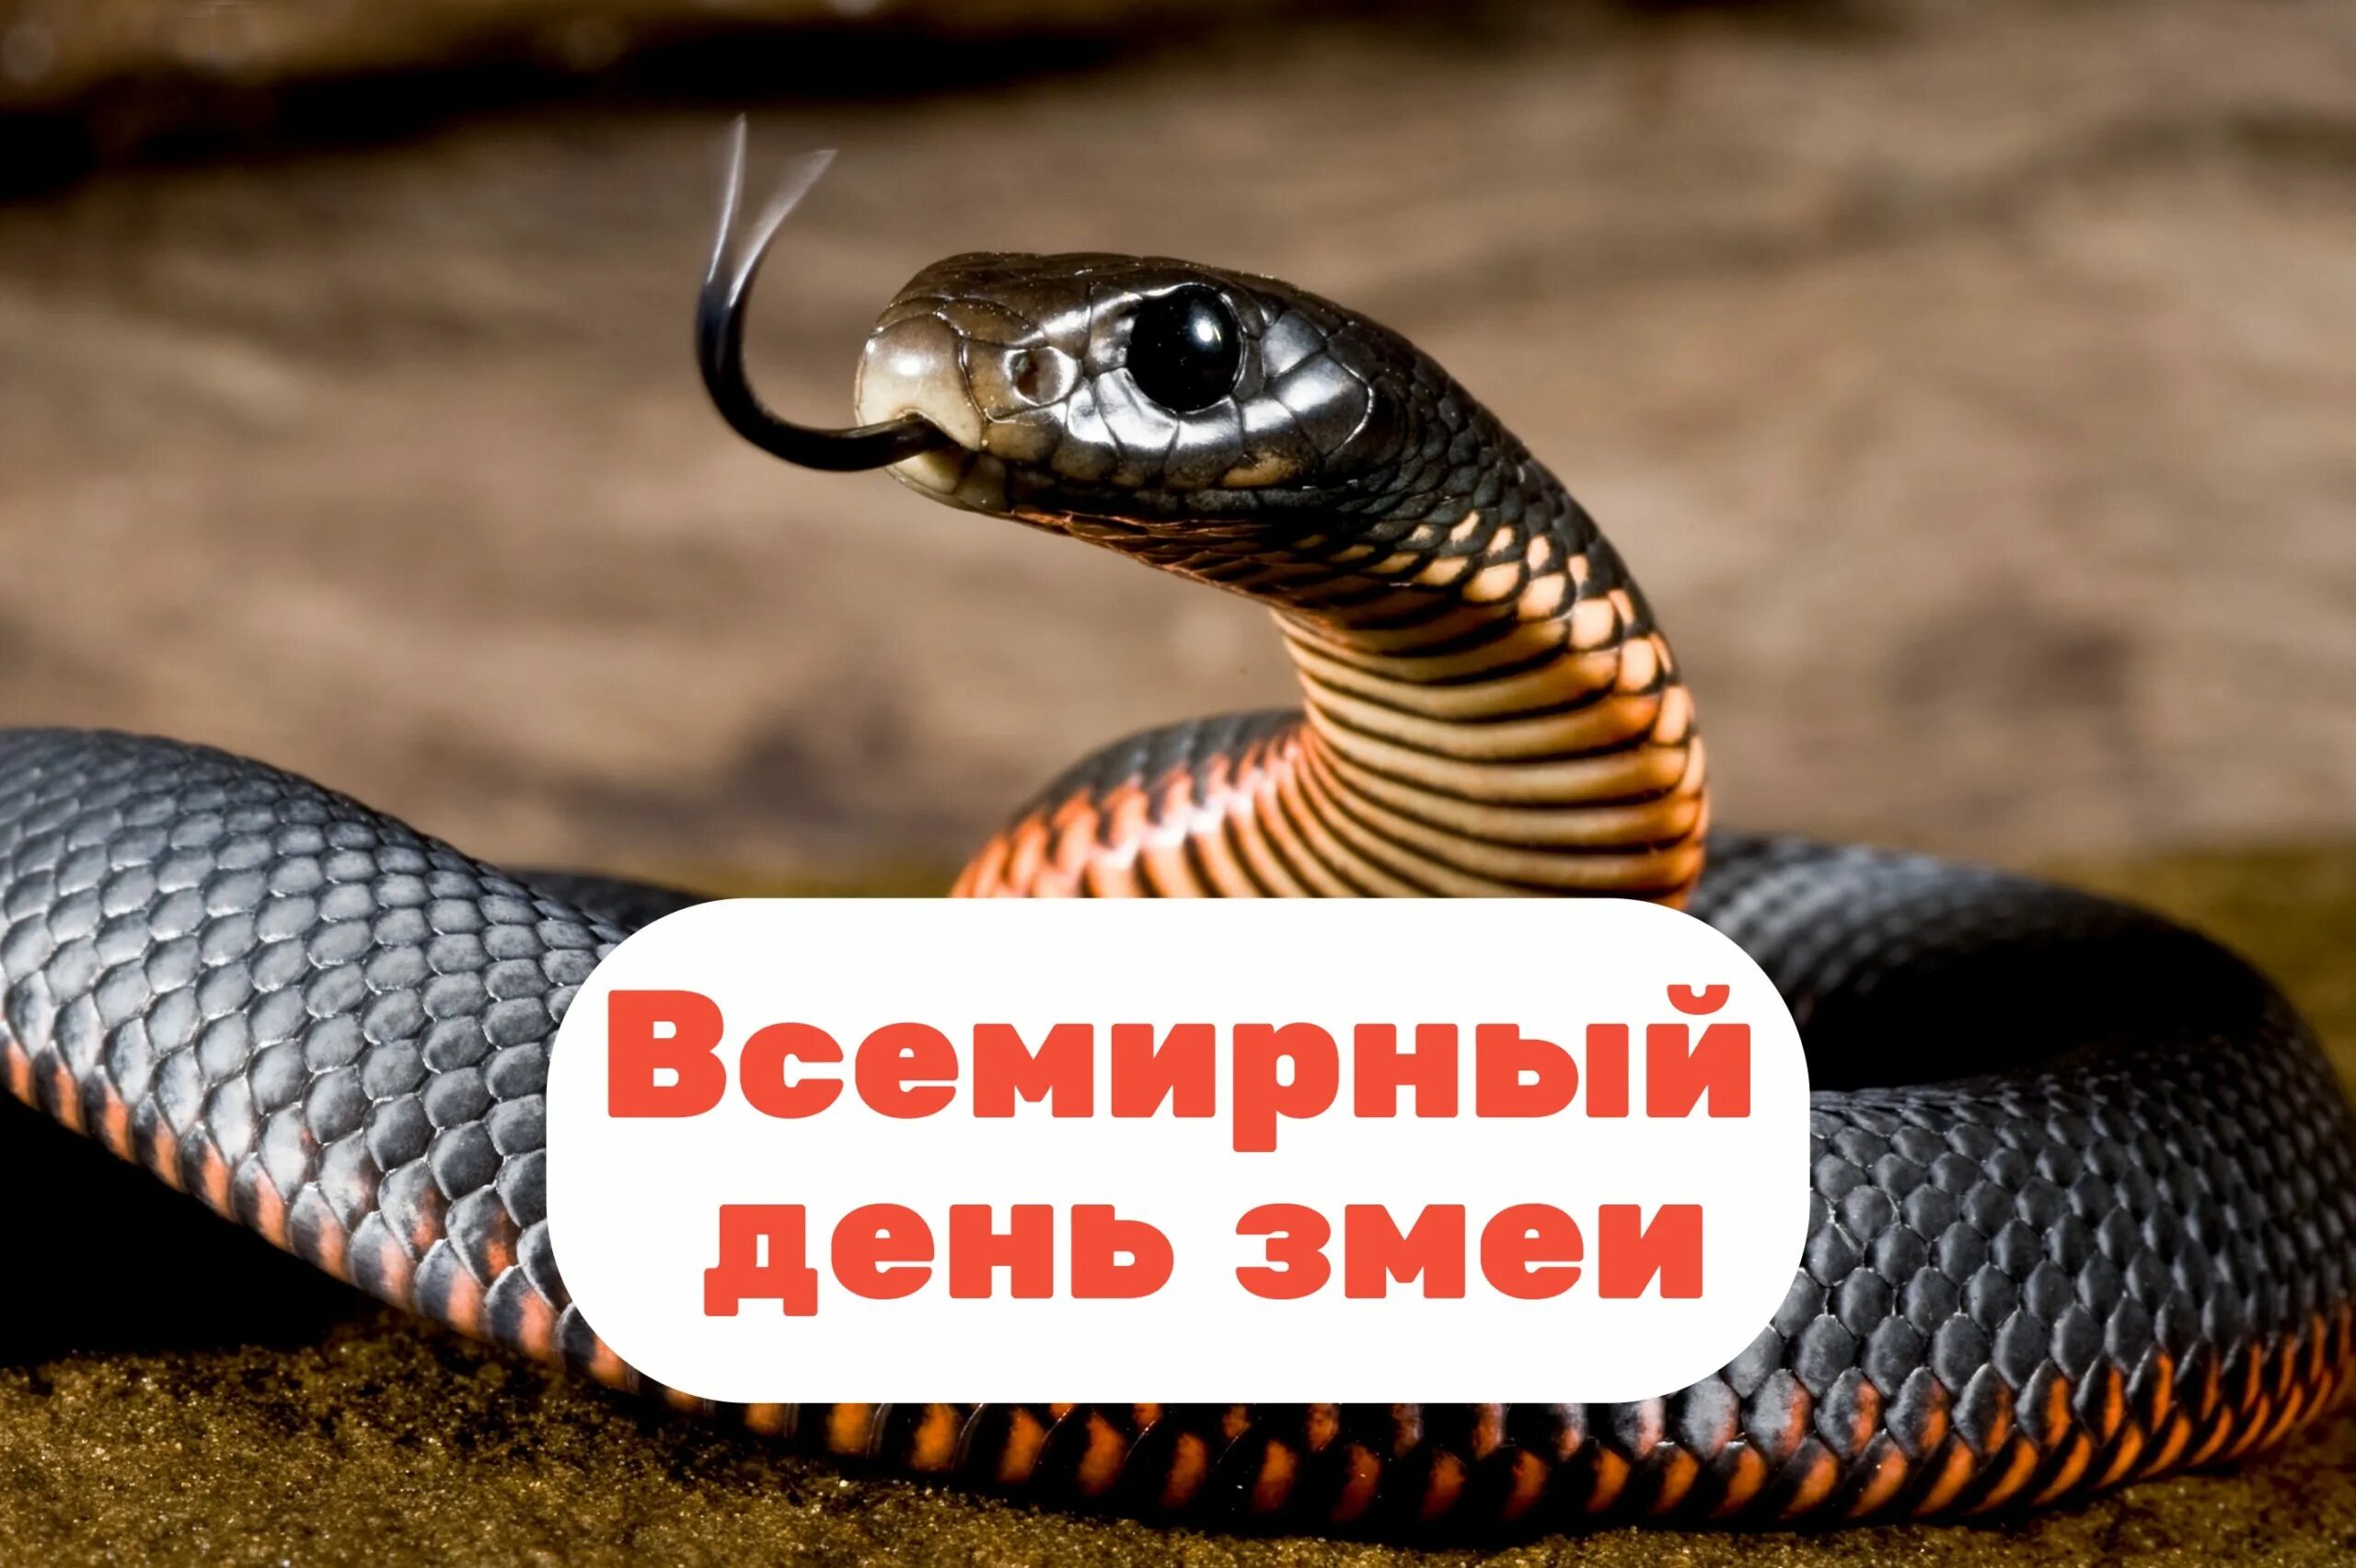 Всемирный день змеи. Всемирный день змеи 16 июля. День змей. День змеи 16 июля.